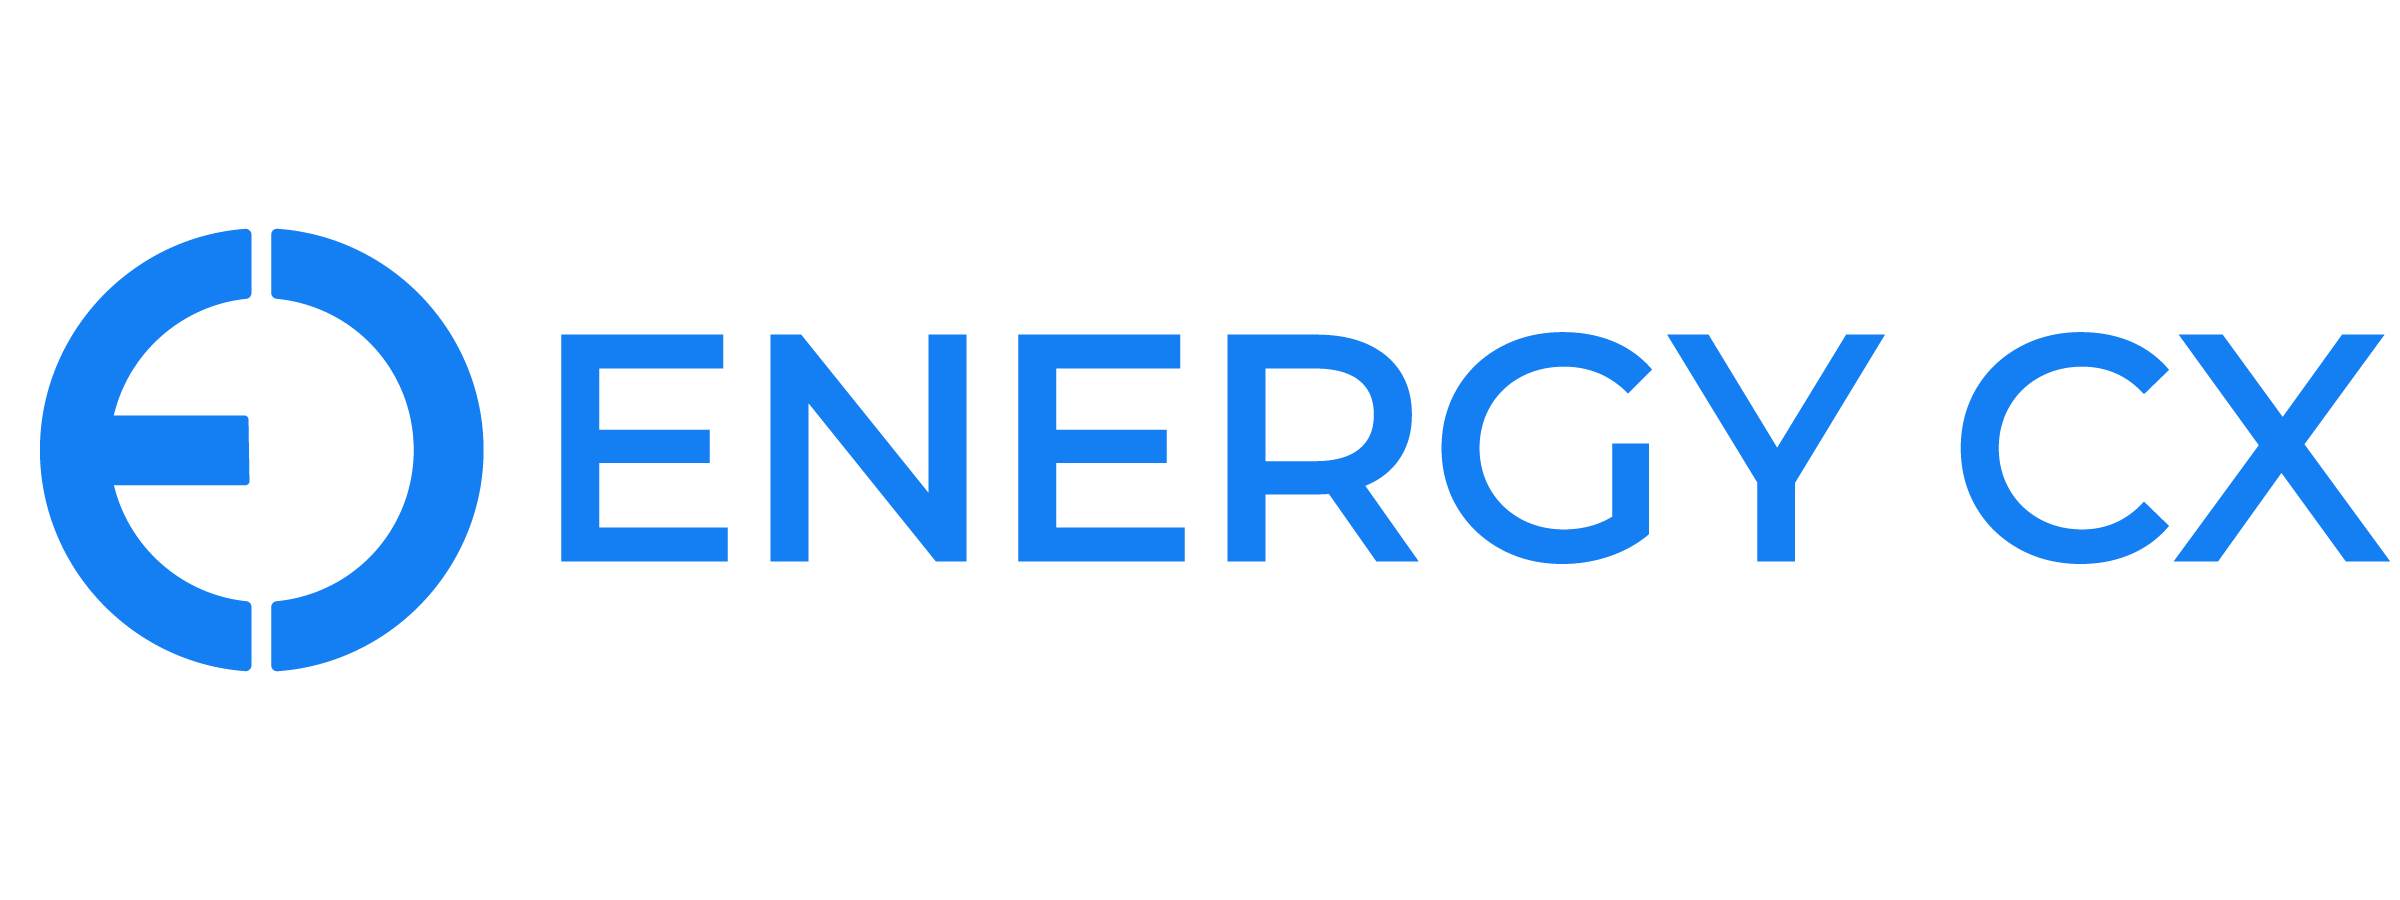 Copy of Energy Cx_Logo Suite-04